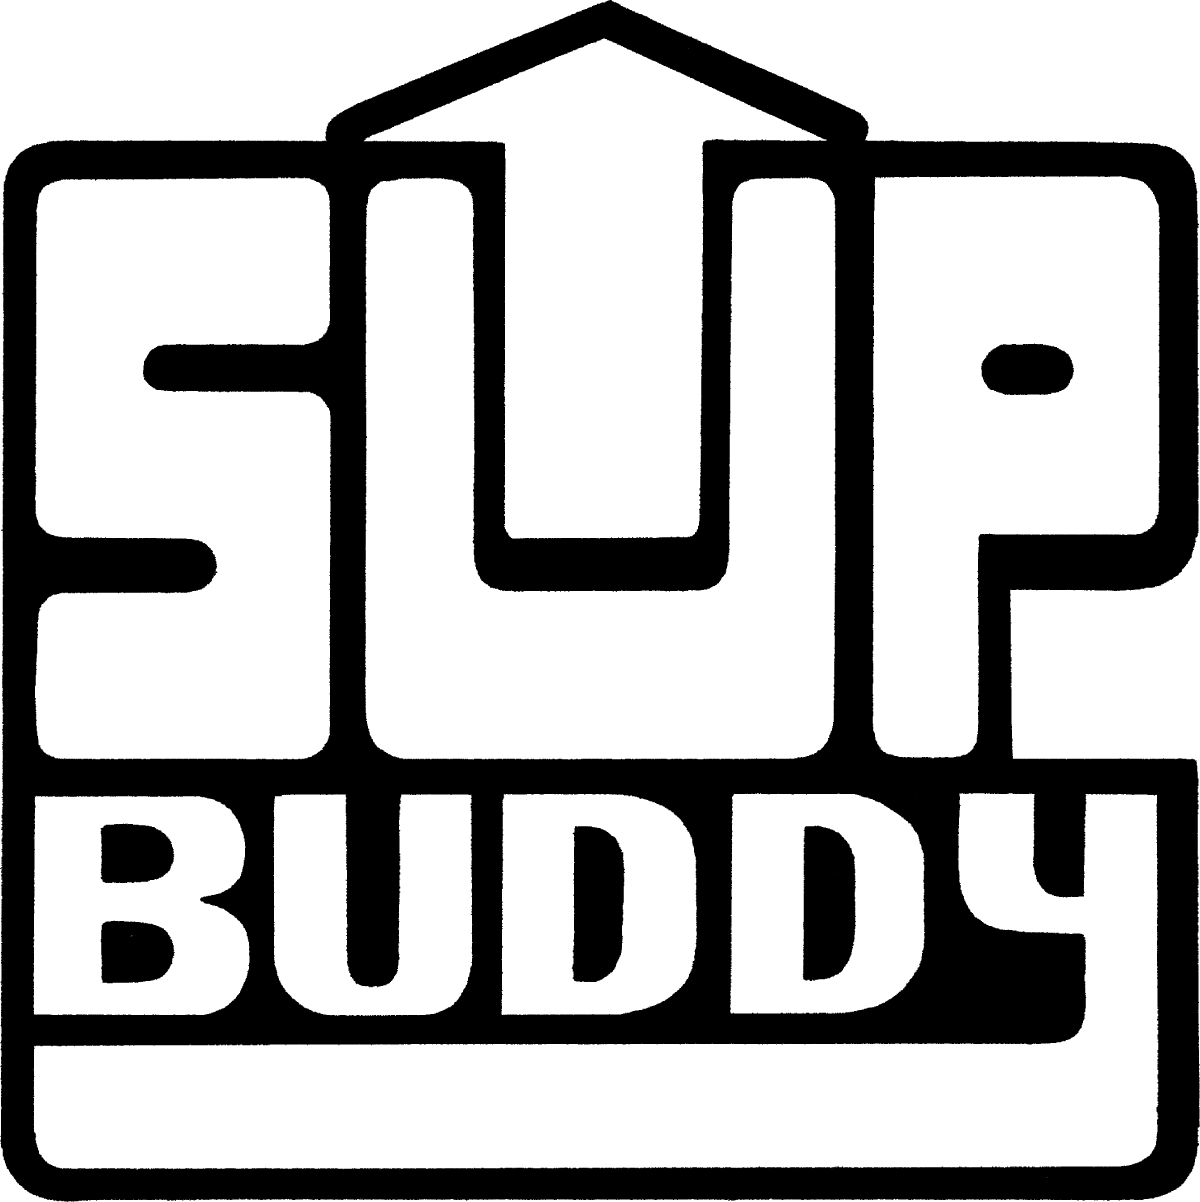 www.wasupbuddy.com